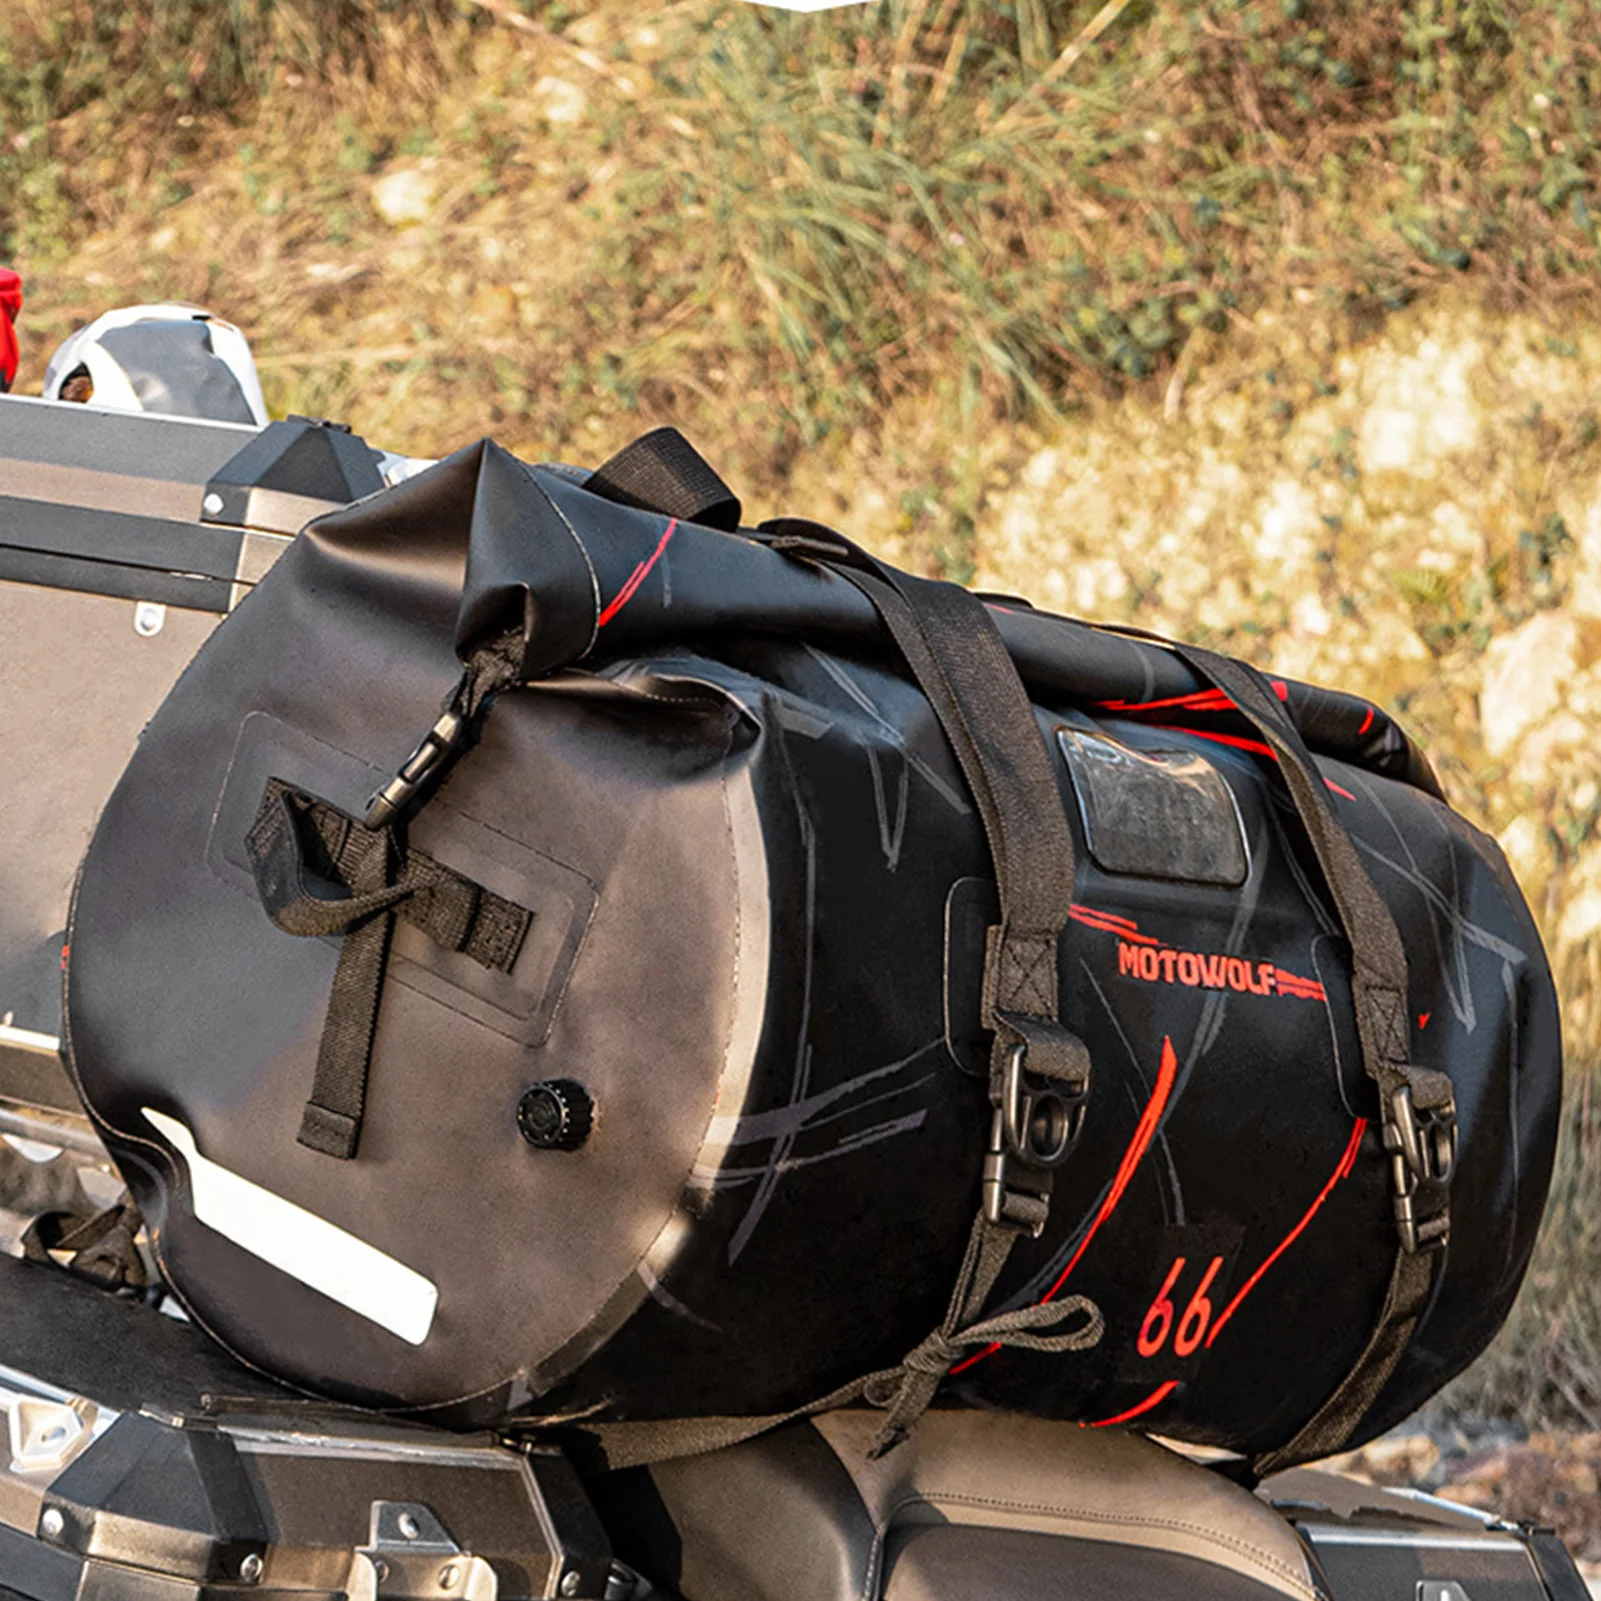 Motorcycle Luggage Bike Bags For Rear Carrier Multifunctional Waterproof Rear Rack Trunk Seat Bag Portable Trunk Bag Travel Tool enlarge